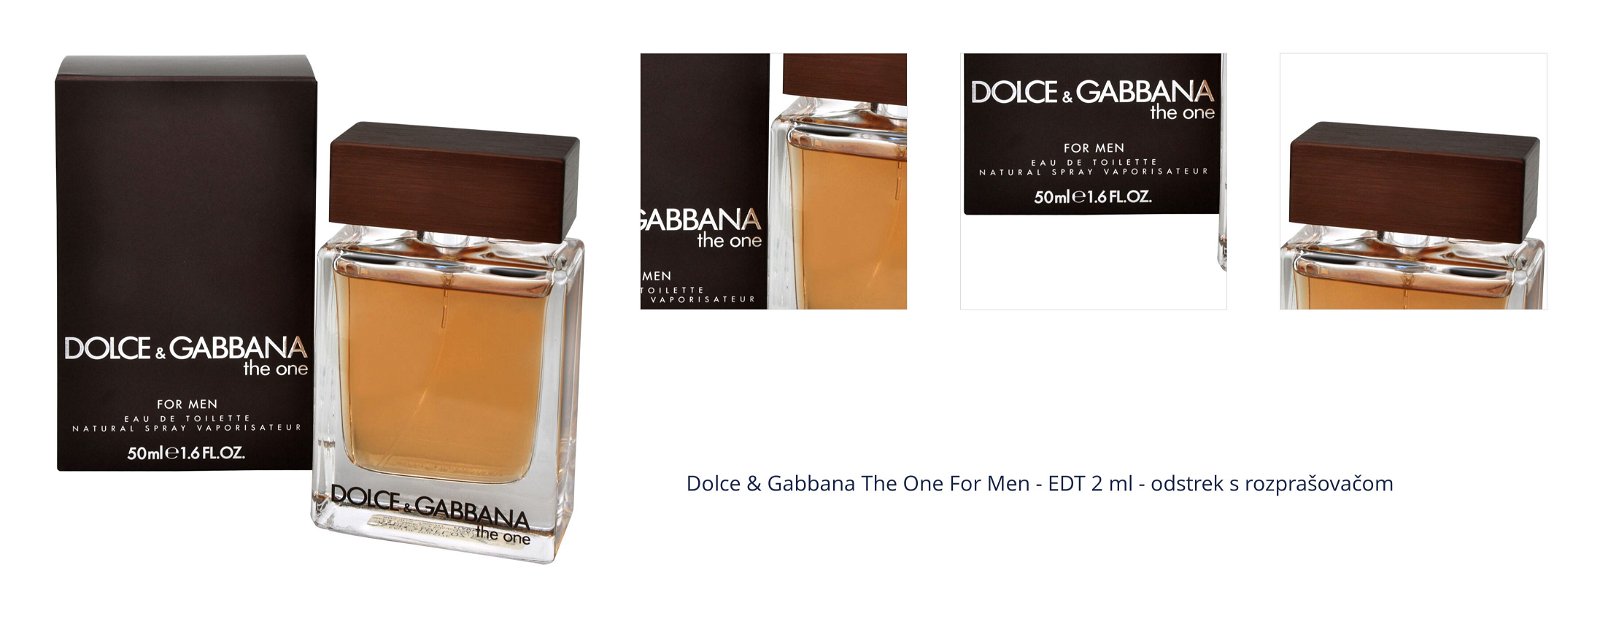 Dolce & Gabbana The One For Men - EDT 2 ml - odstrek s rozprašovačom 1